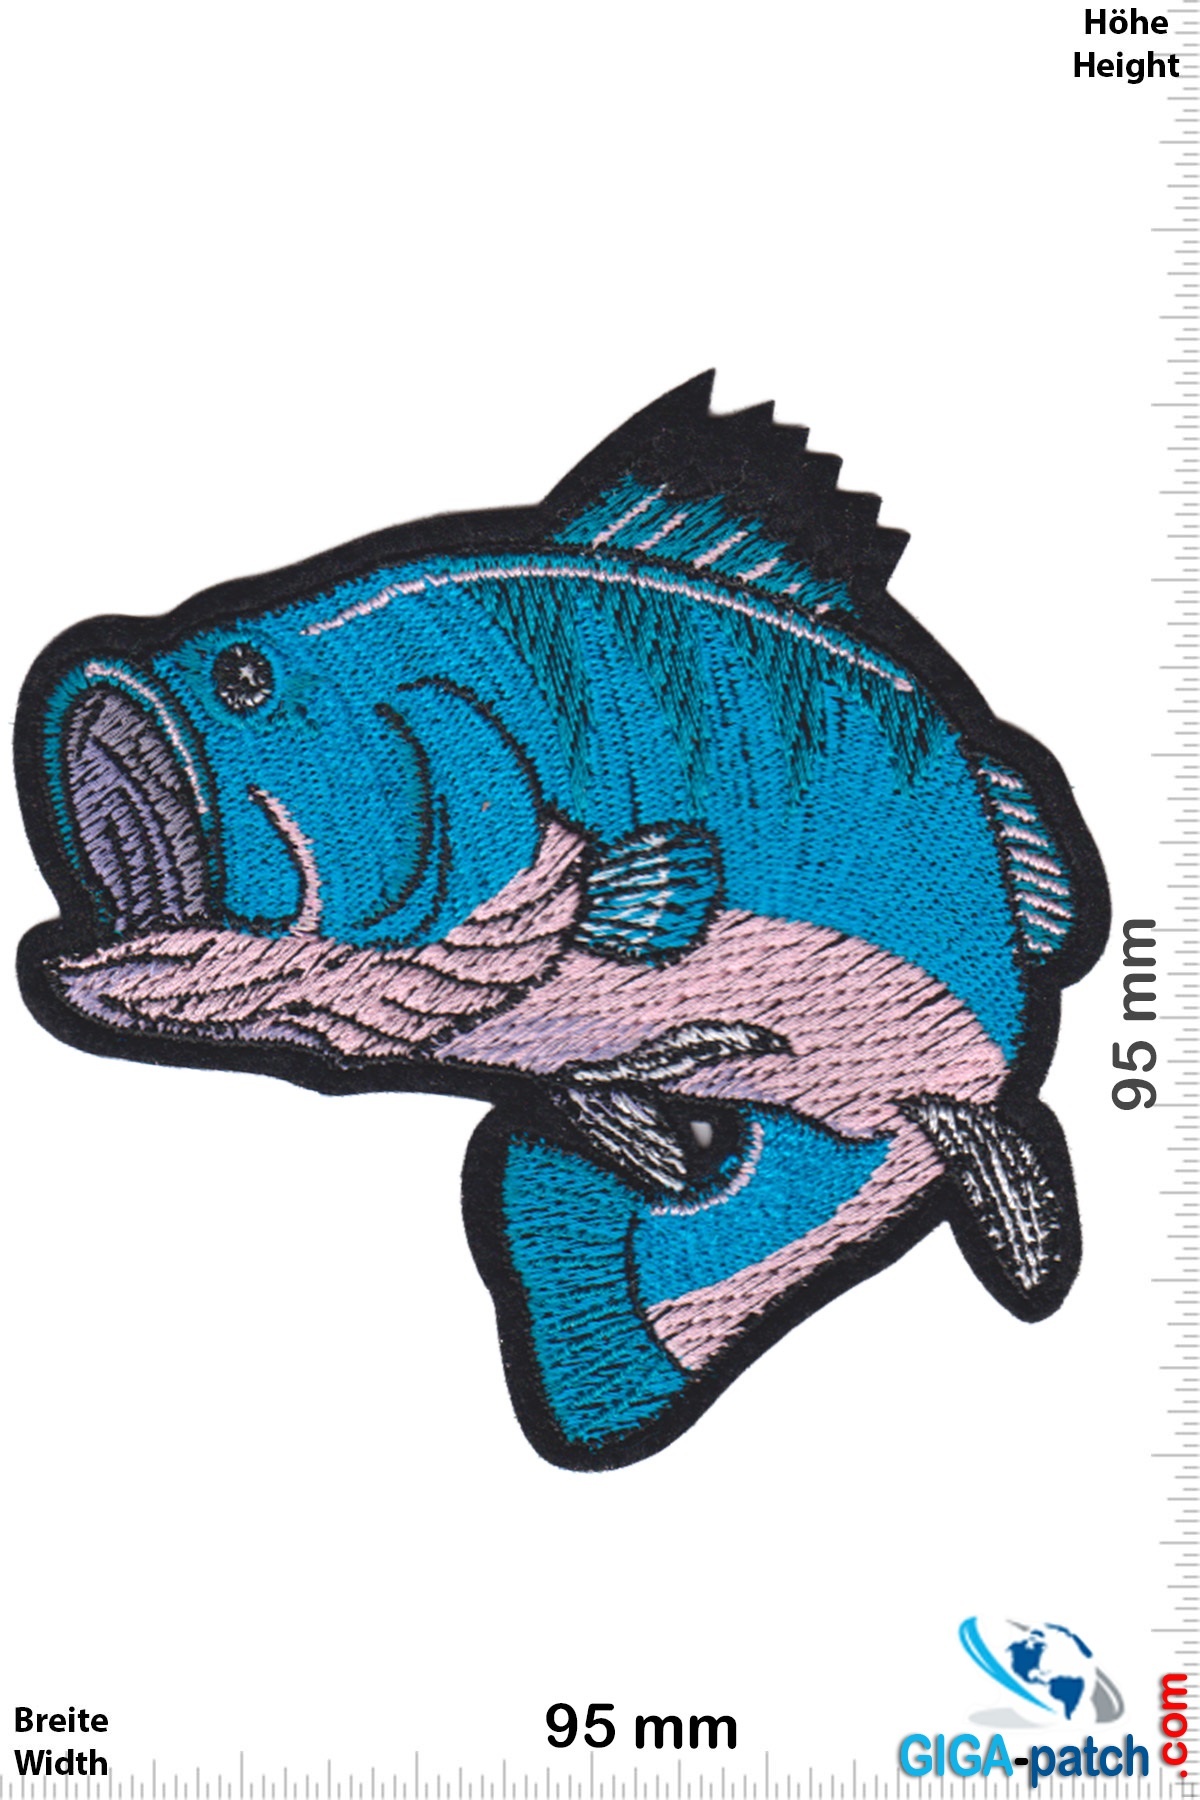 https://cdn.webshopapp.com/shops/103628/files/334323268/fisch-perch-fishing-fish-blue.jpg